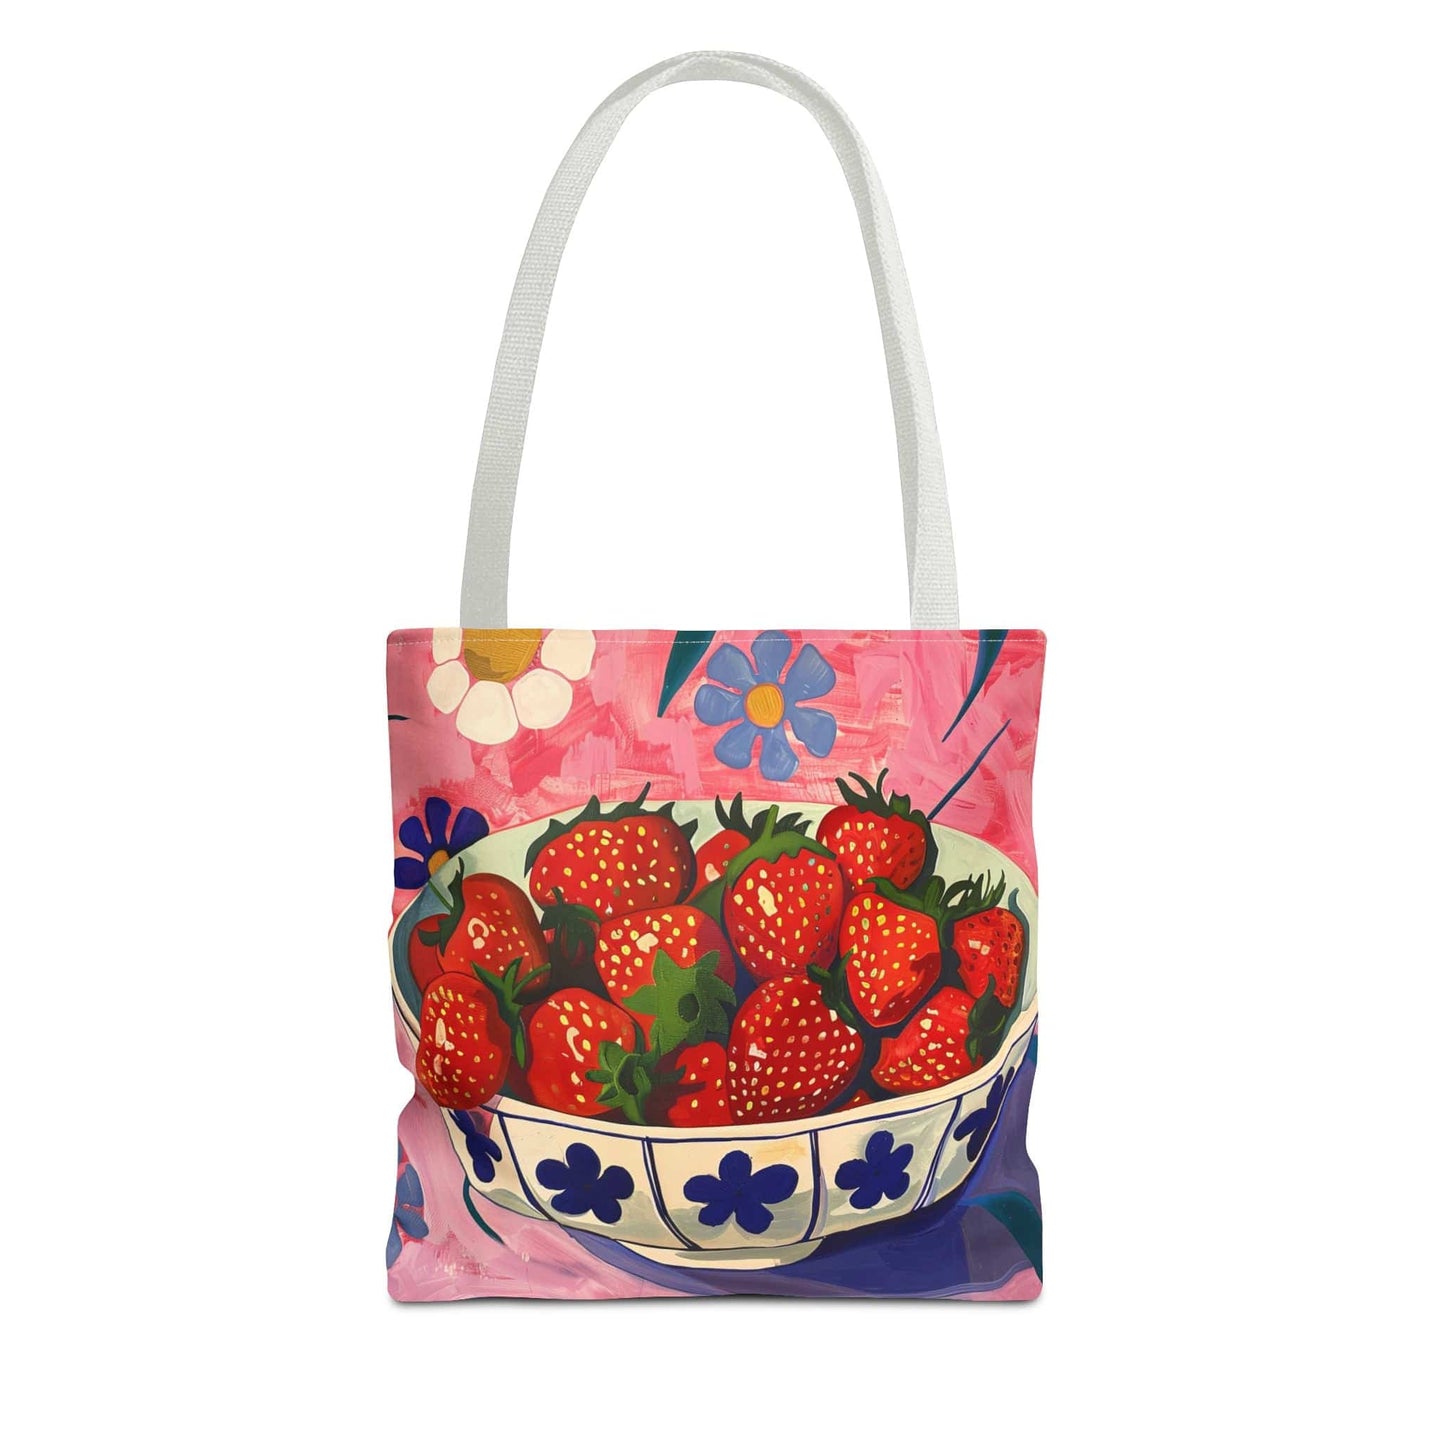 Free Gift - Fruit Tote Bag